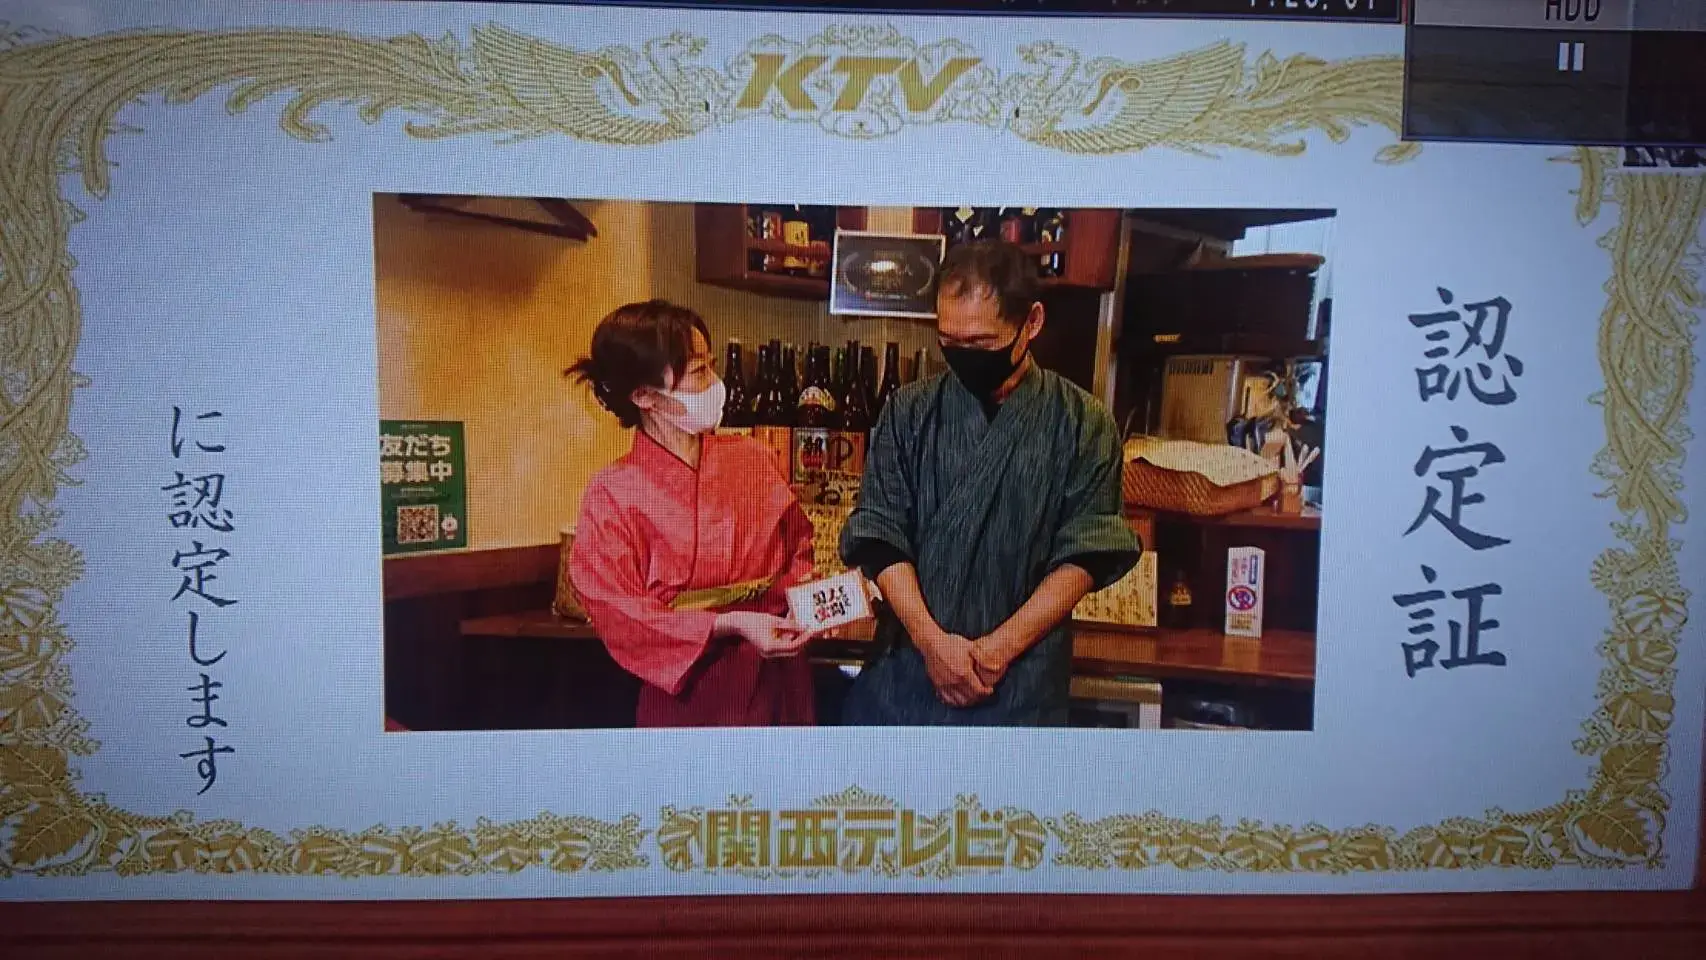 関西テレビにお店を取り上げられた際の画像